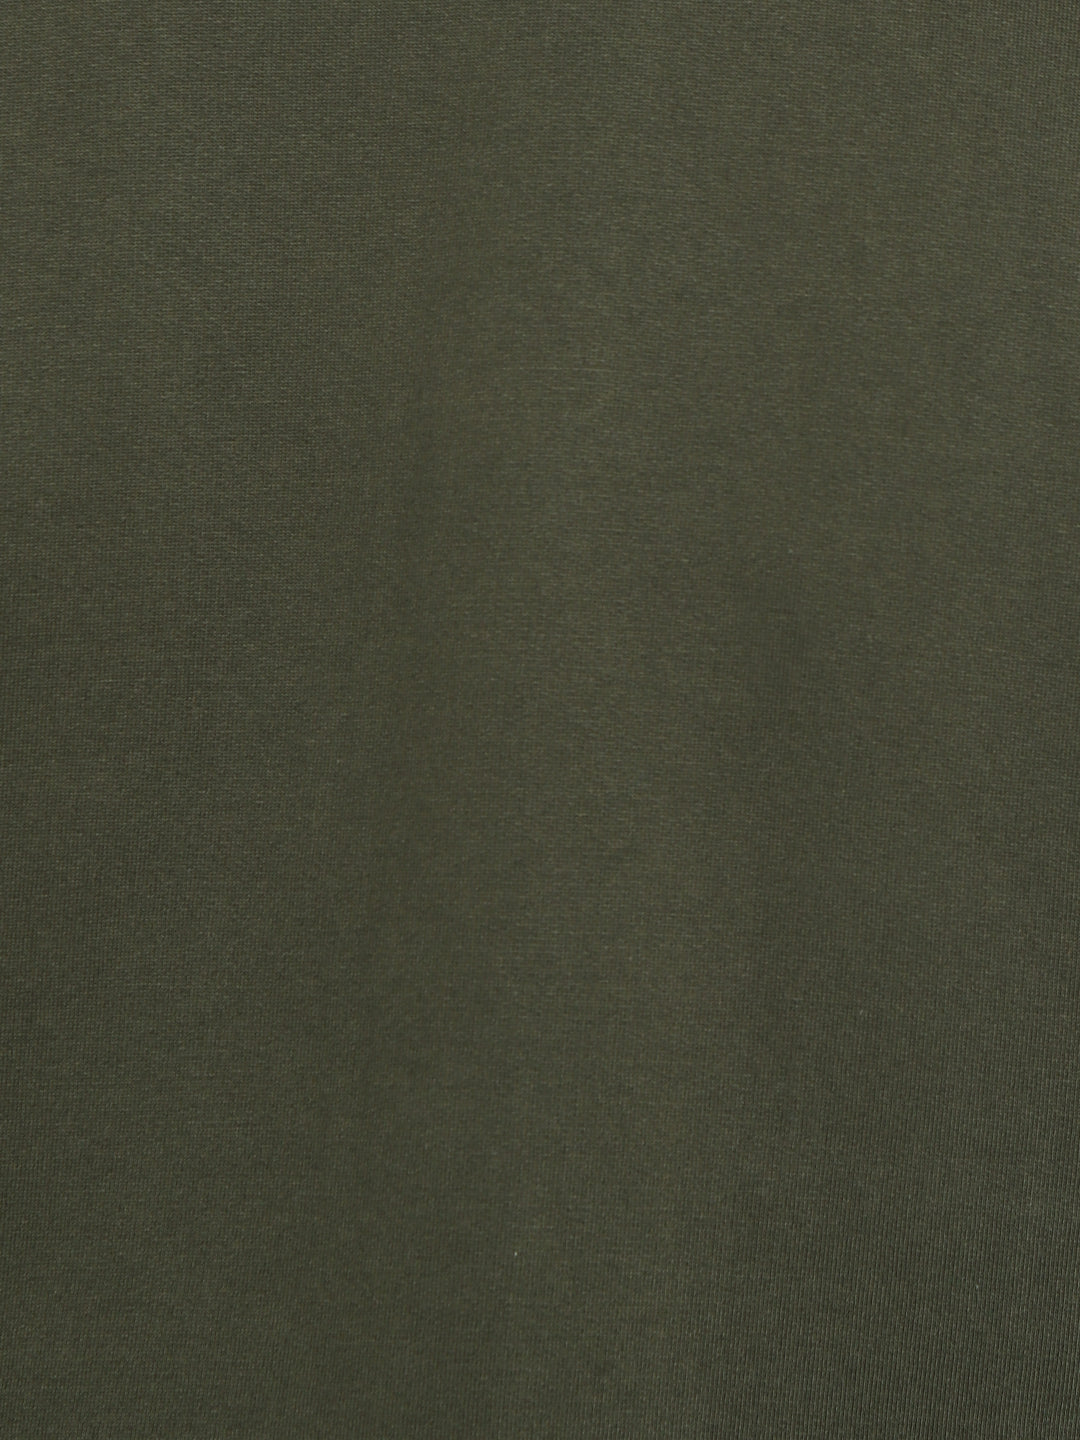 Round Neck Sweatshirt For Men - Dark Olive